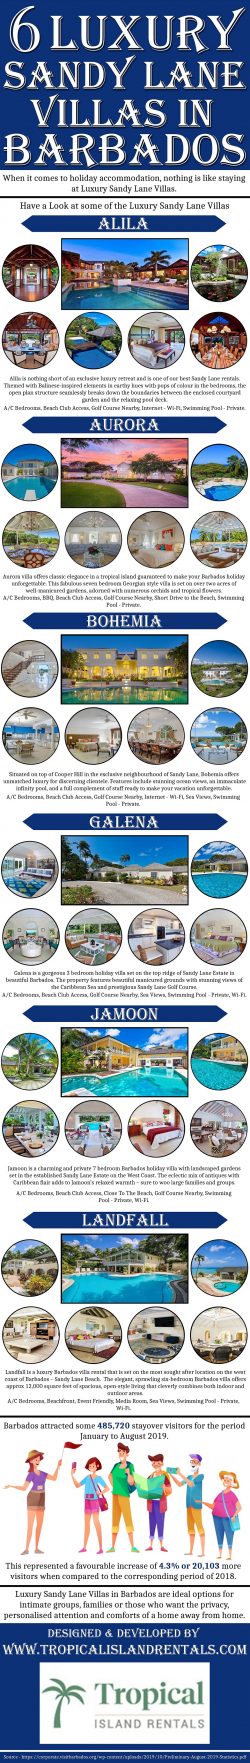 6 Luxury Sandy Lane Villas in Barbados